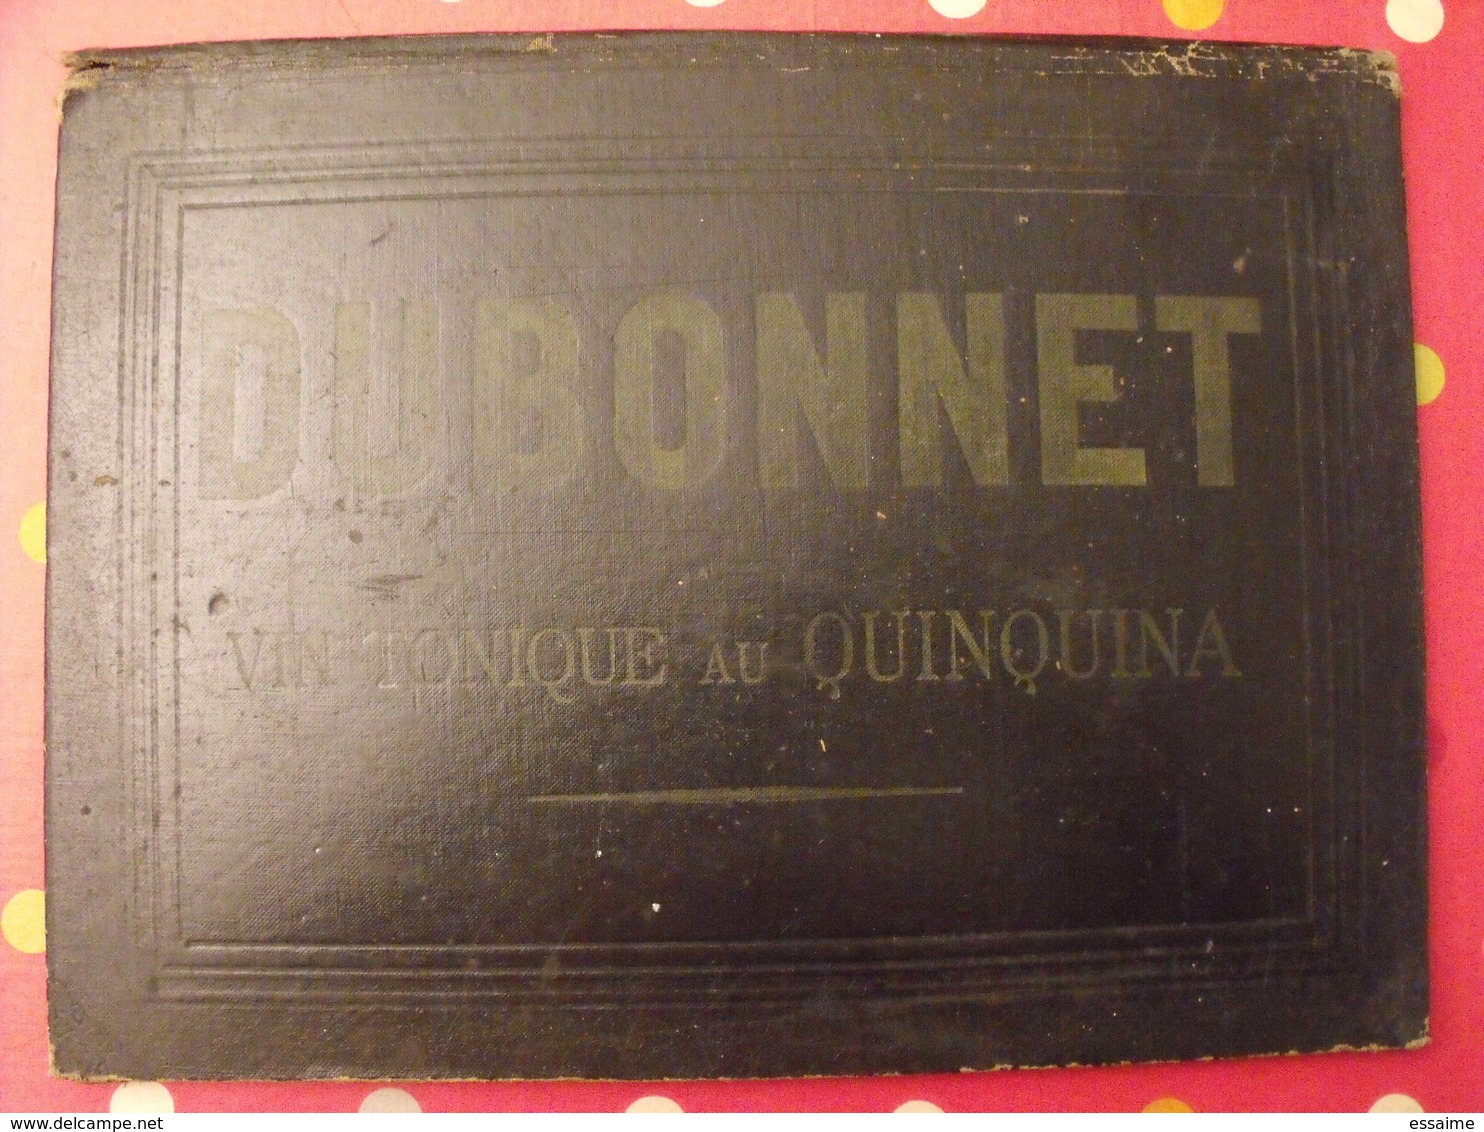 Sous-main Dubonnet, Vin Tonique Au Quiquina. Apéritif. Champagne Morlant Reims. Illustrateur : J Stall. Vers 1930 - Plaques En Carton